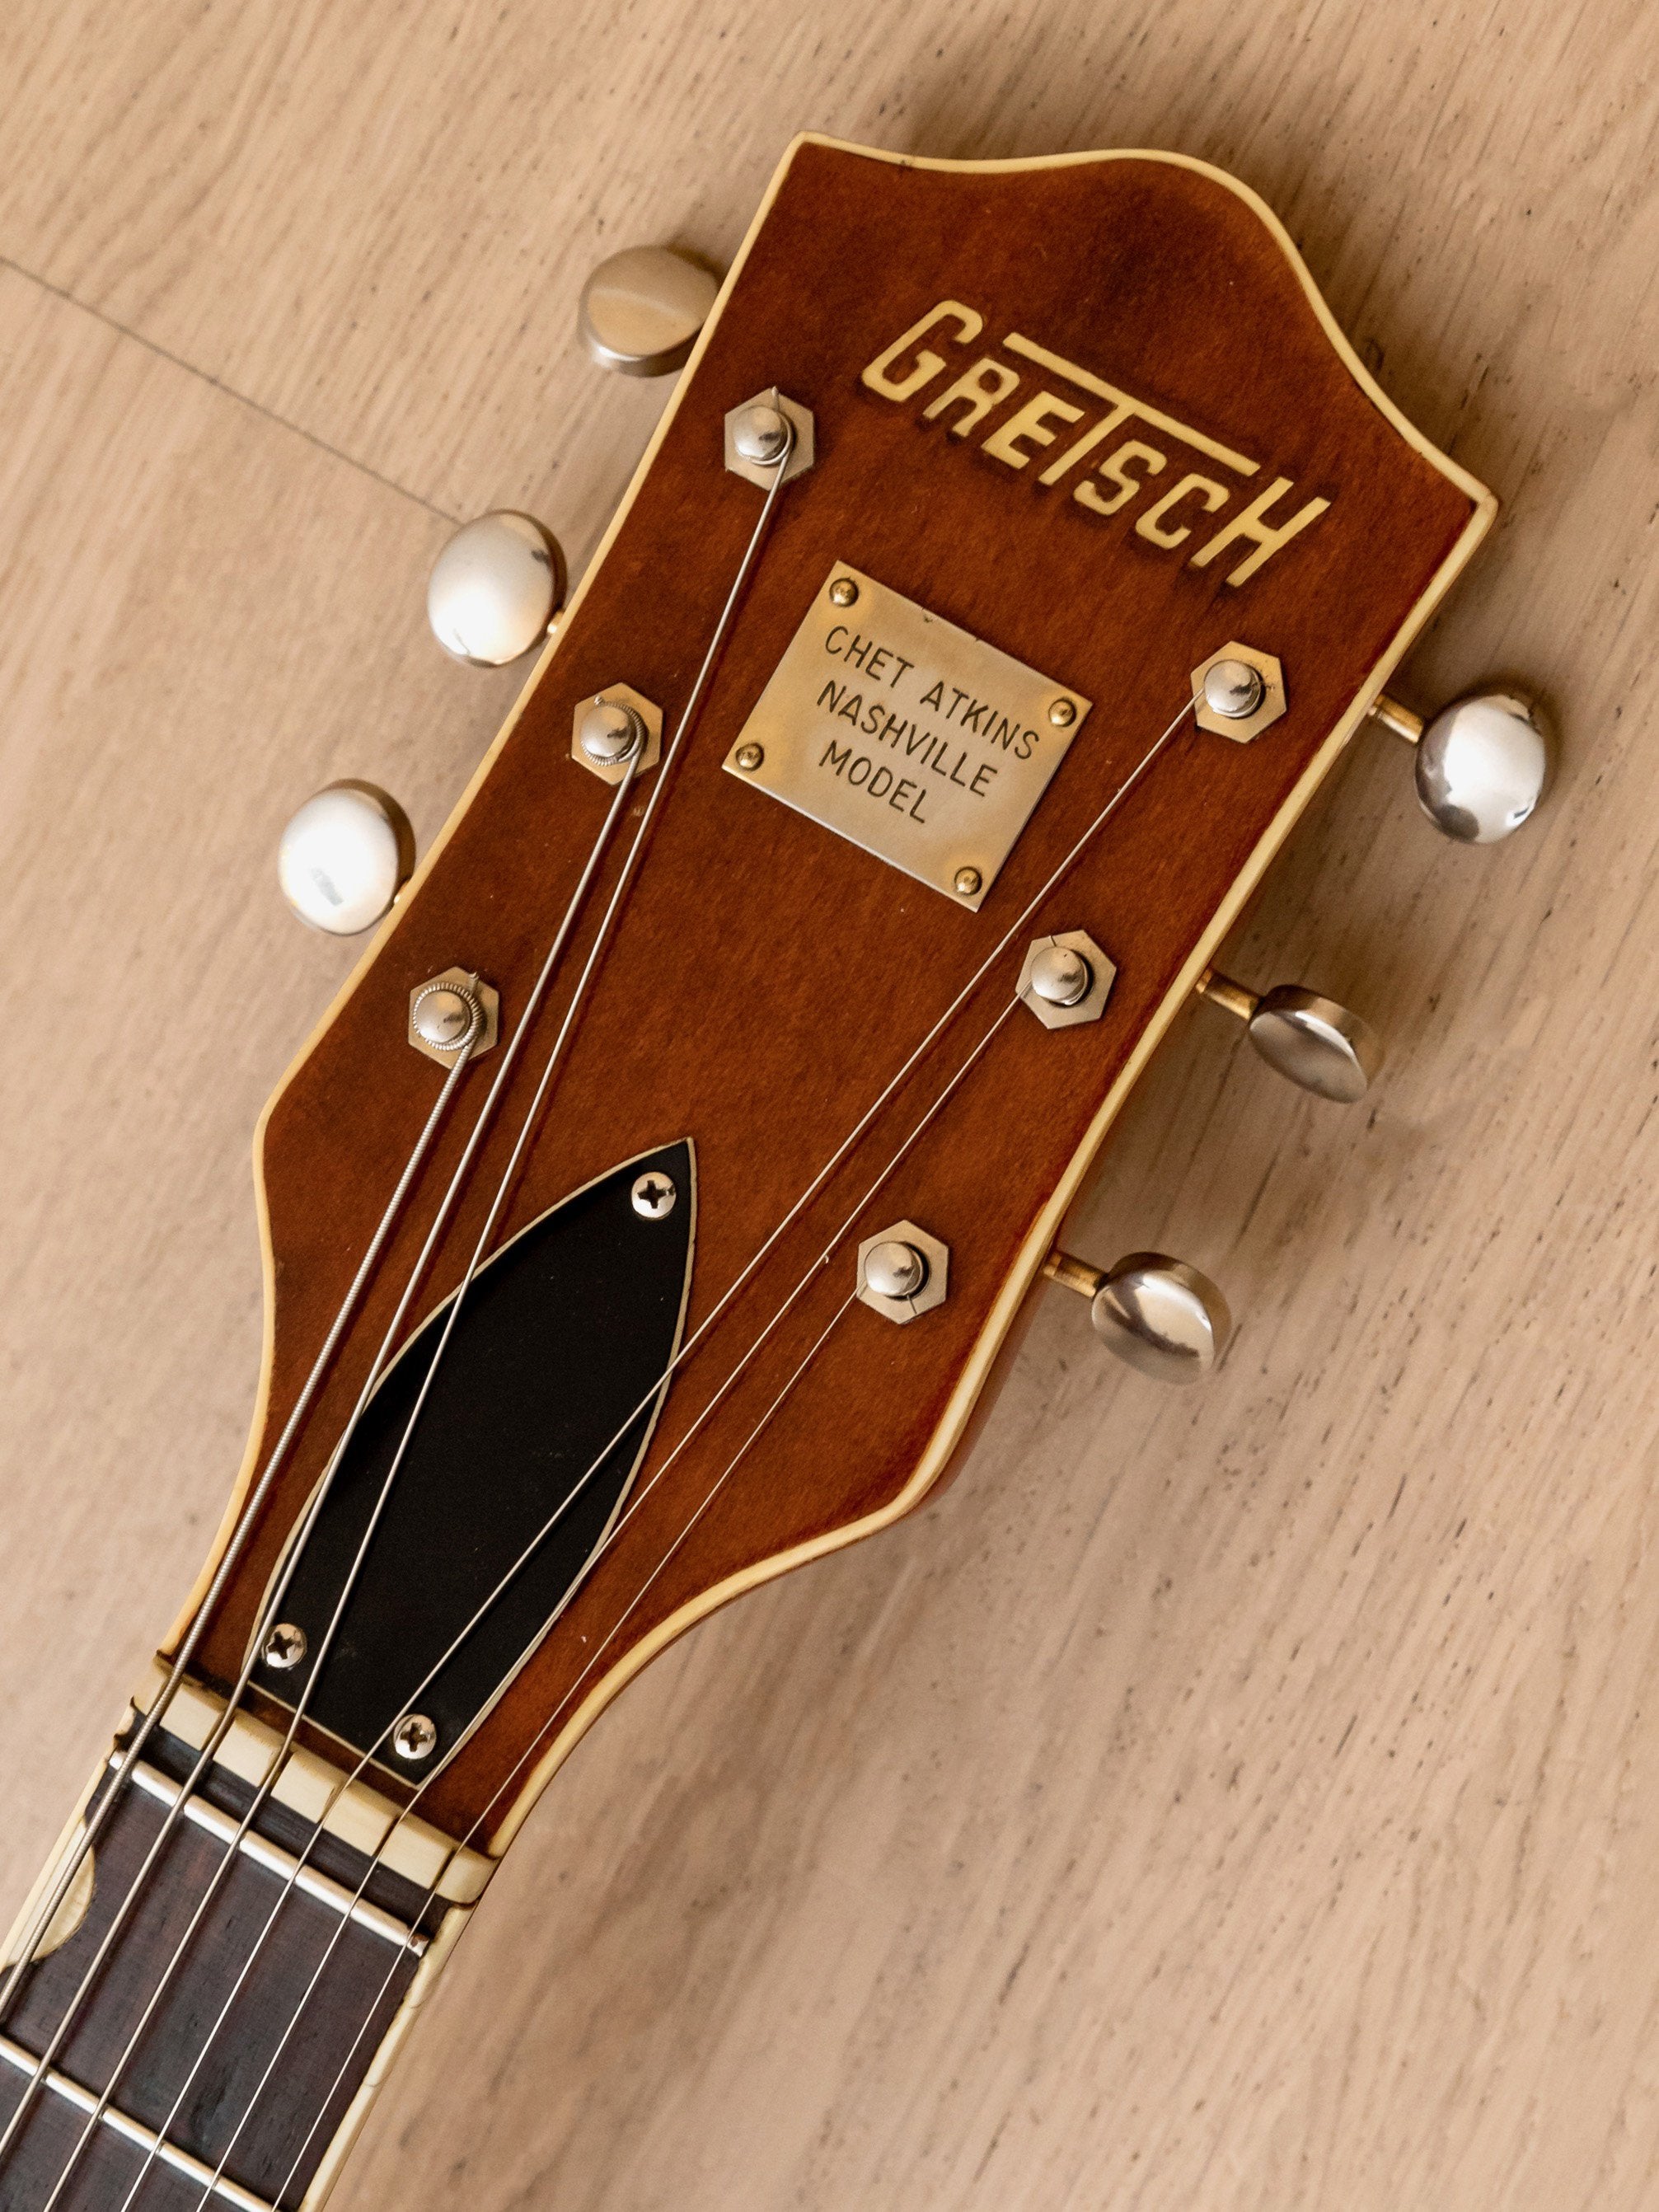 1967 Gretsch 6120 Chet Atkins Nashville Double Cutaway Vintage Guitar Western Orange w/ Case